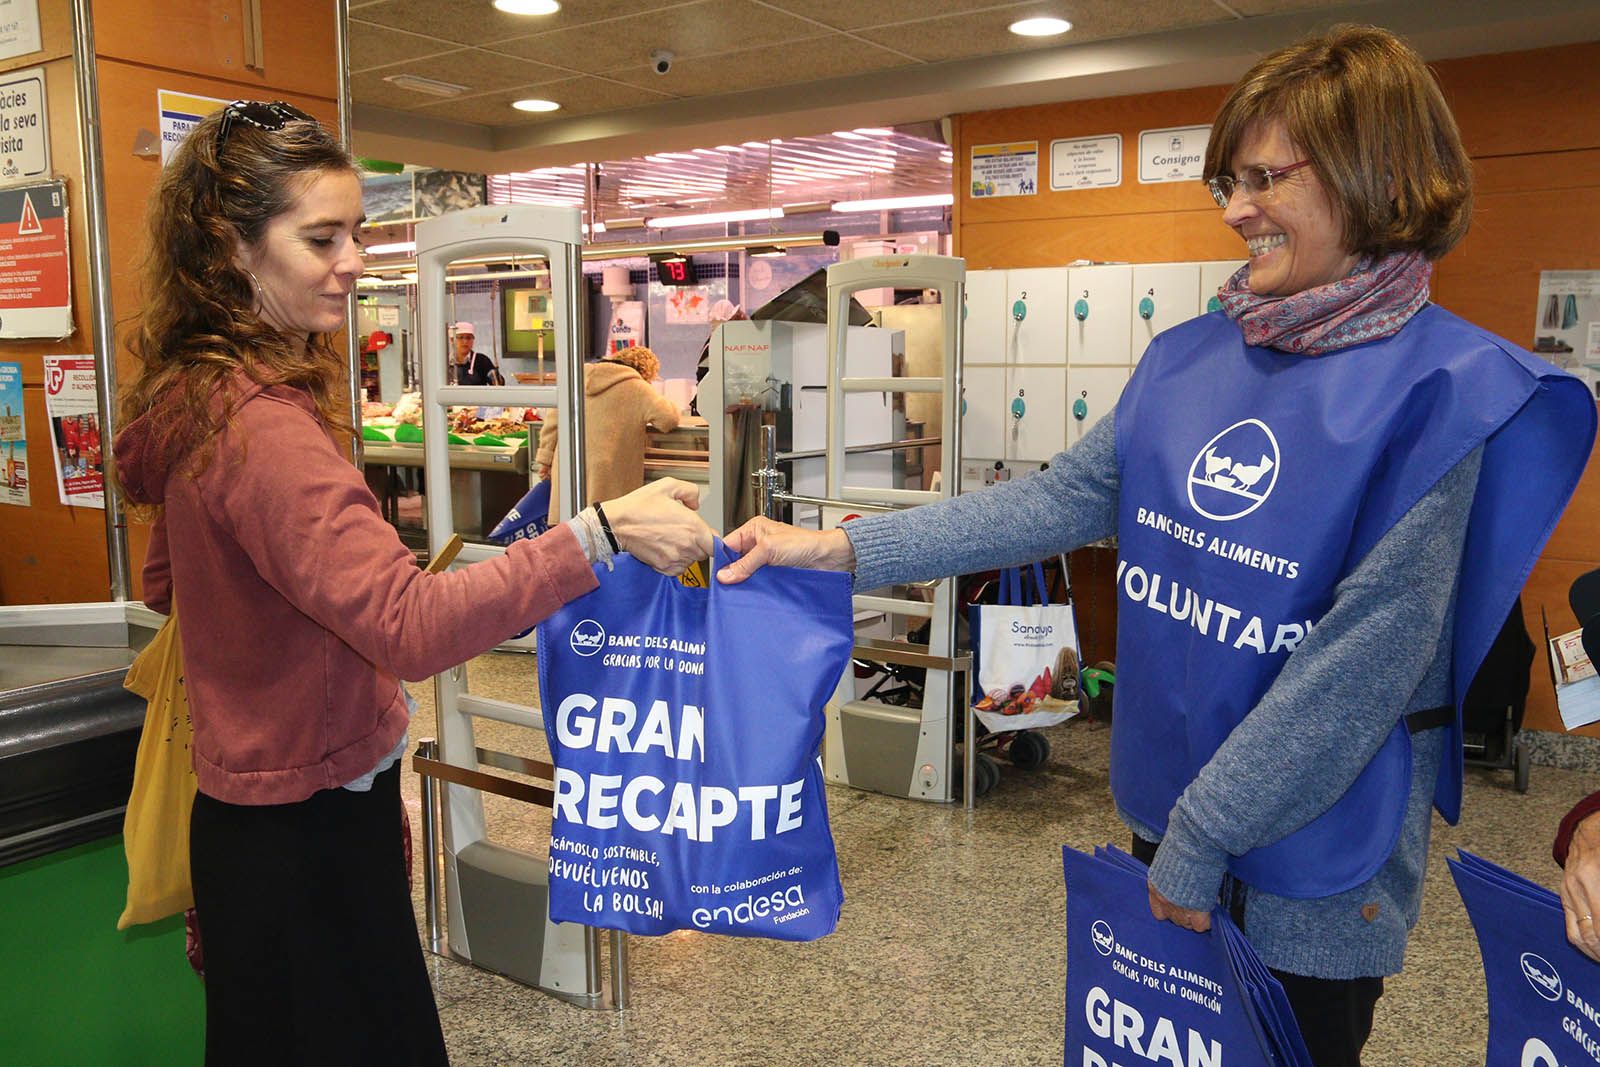 El Gran Recapte, més sostenible gràcies a les bosses reutilitzables de la Fundació Endesa. Foto: Lali Álvarez